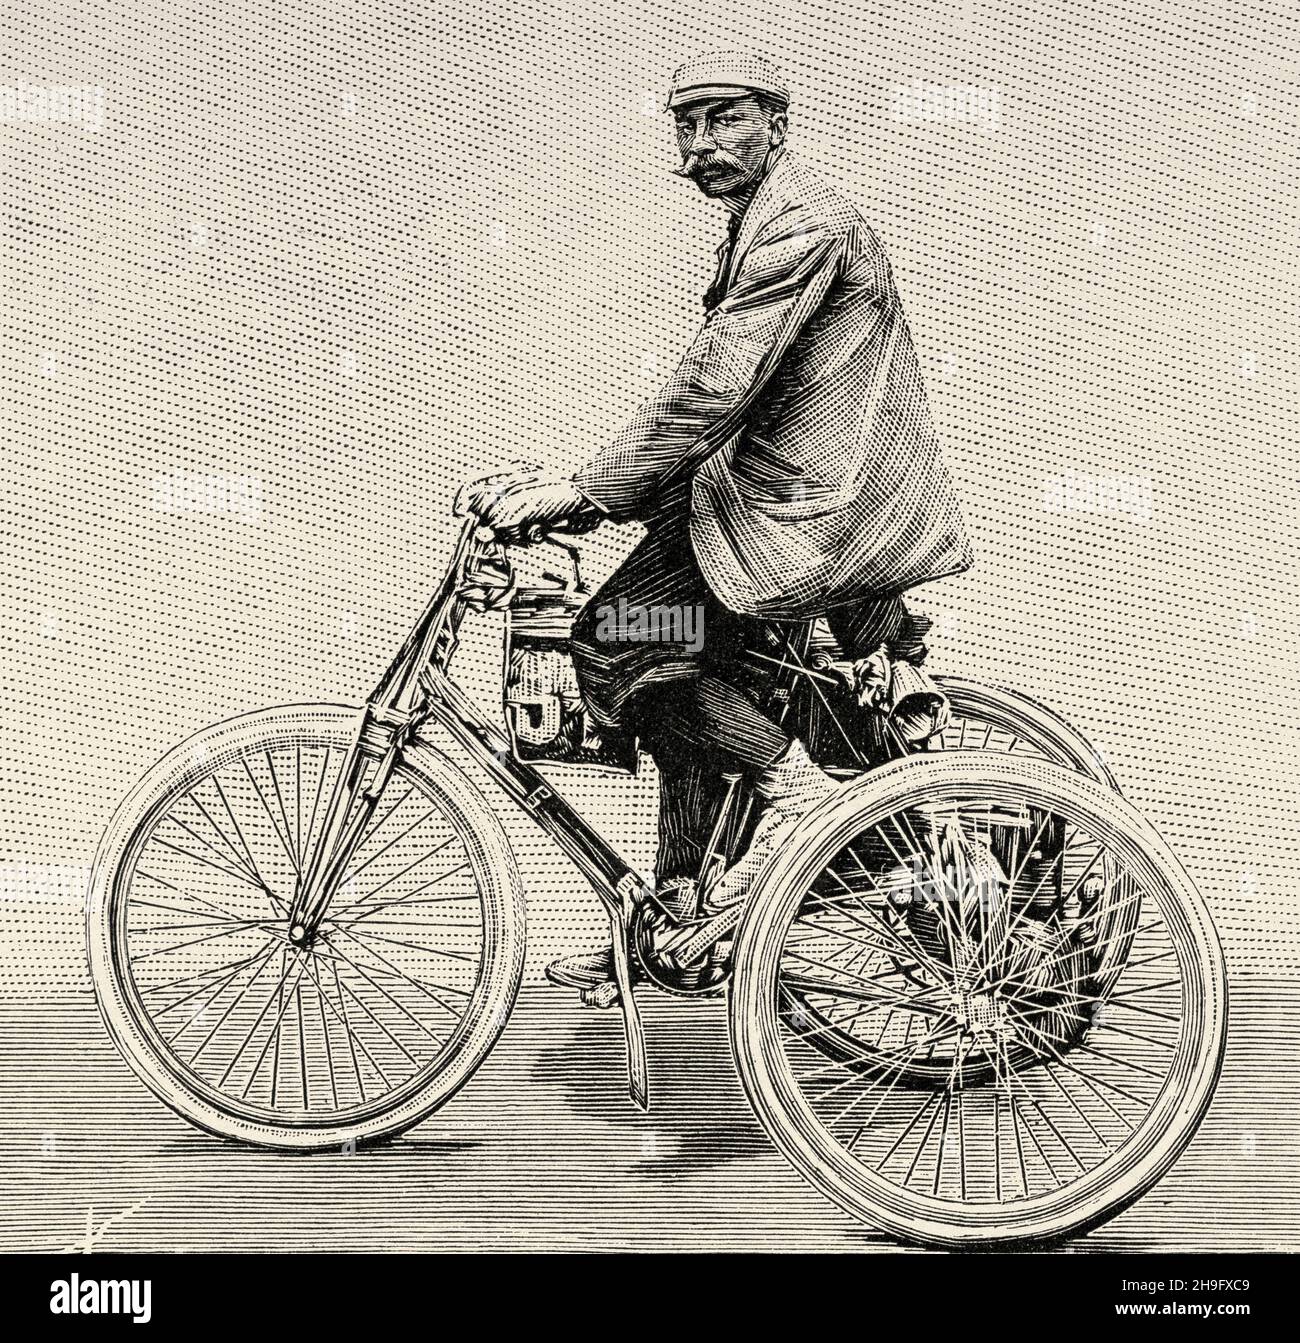 Das Dreirad hat einen Benzinmotor. Dion und Bouton Dreirad. Alte, gravierte Illustration aus dem 19. Jahrhundert von La Nature 1897 Stockfoto